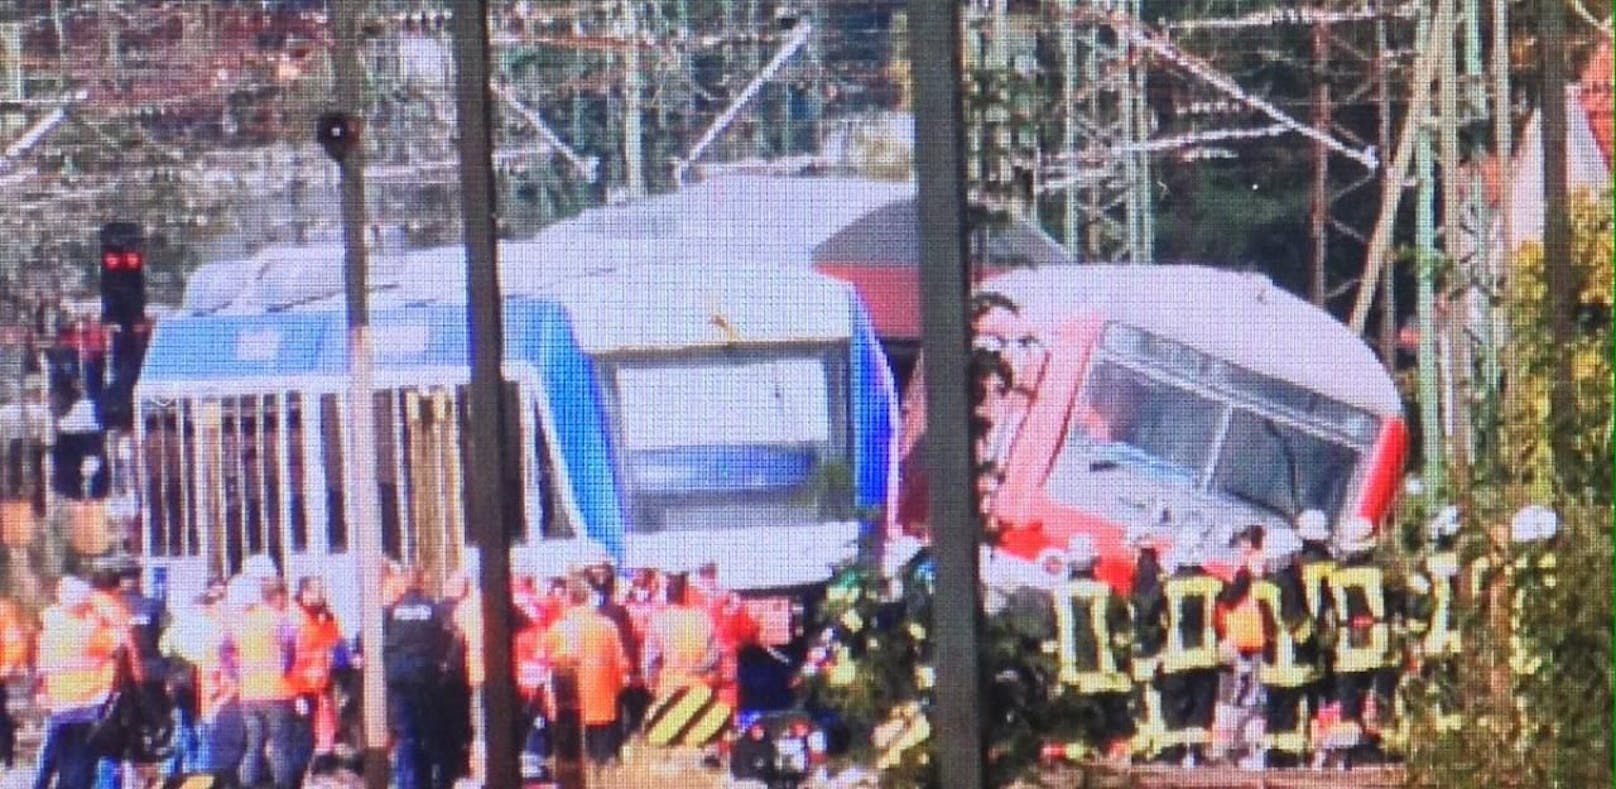 Zugunfall in Bayern fordert mehrere Verletzte